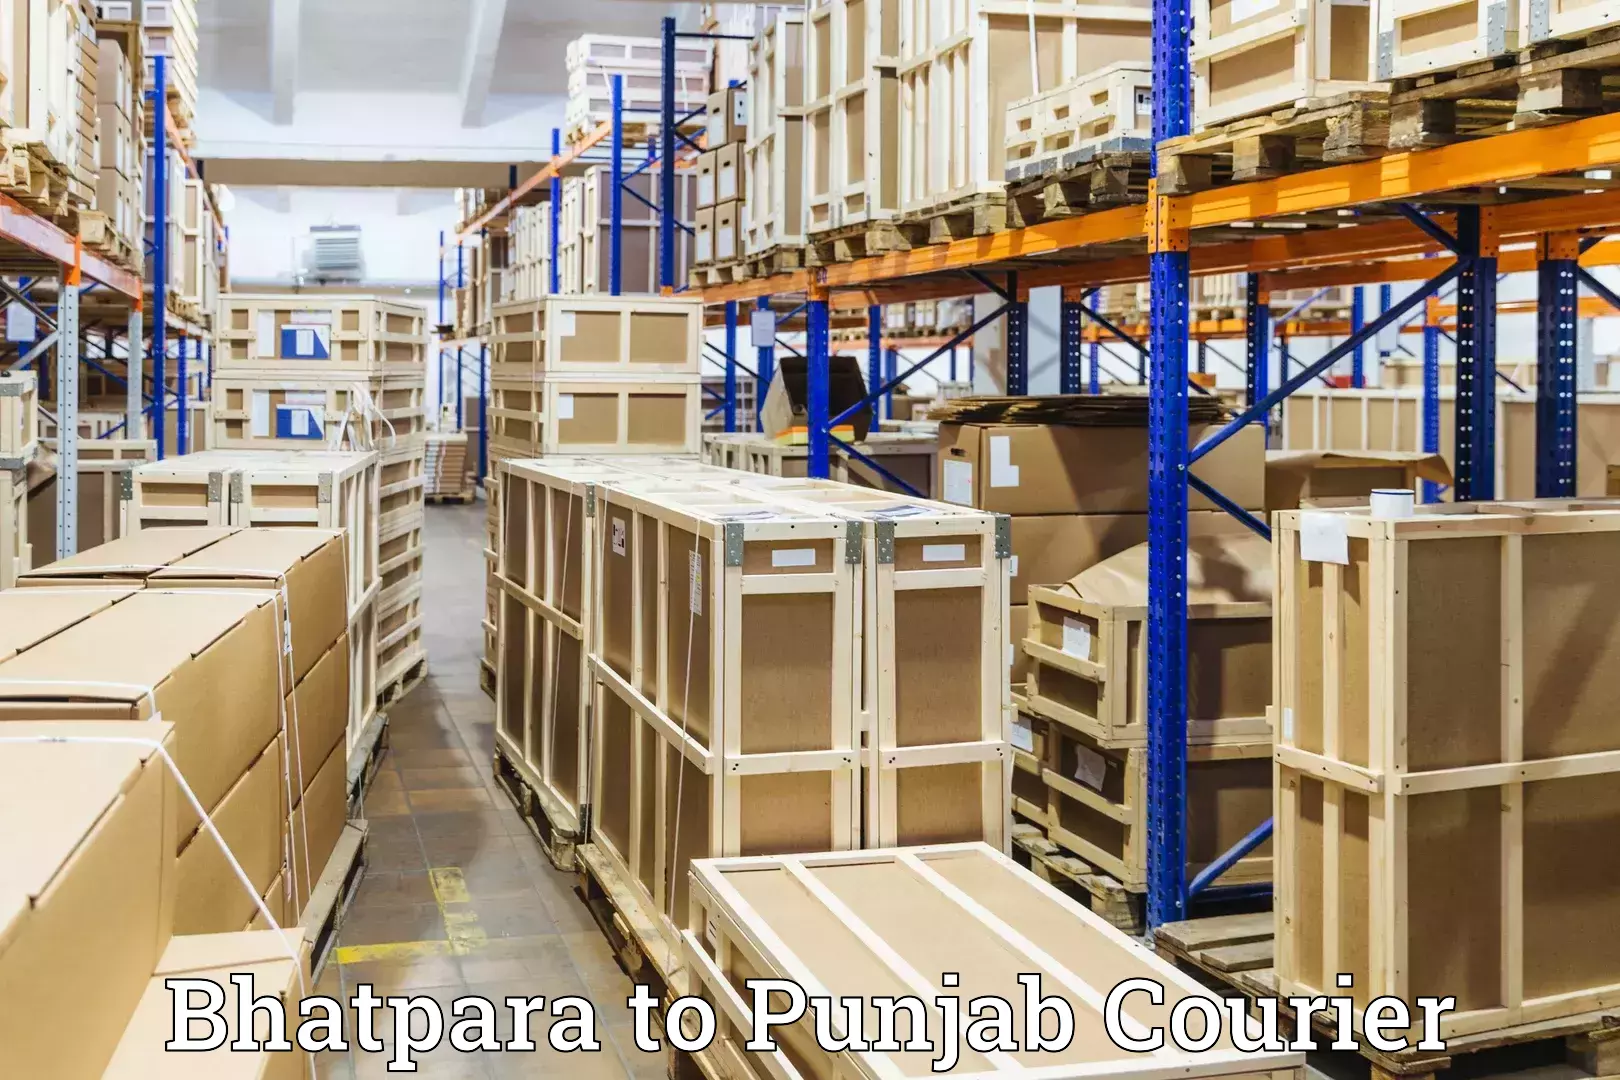 Customized luggage delivery Bhatpara to Punjab